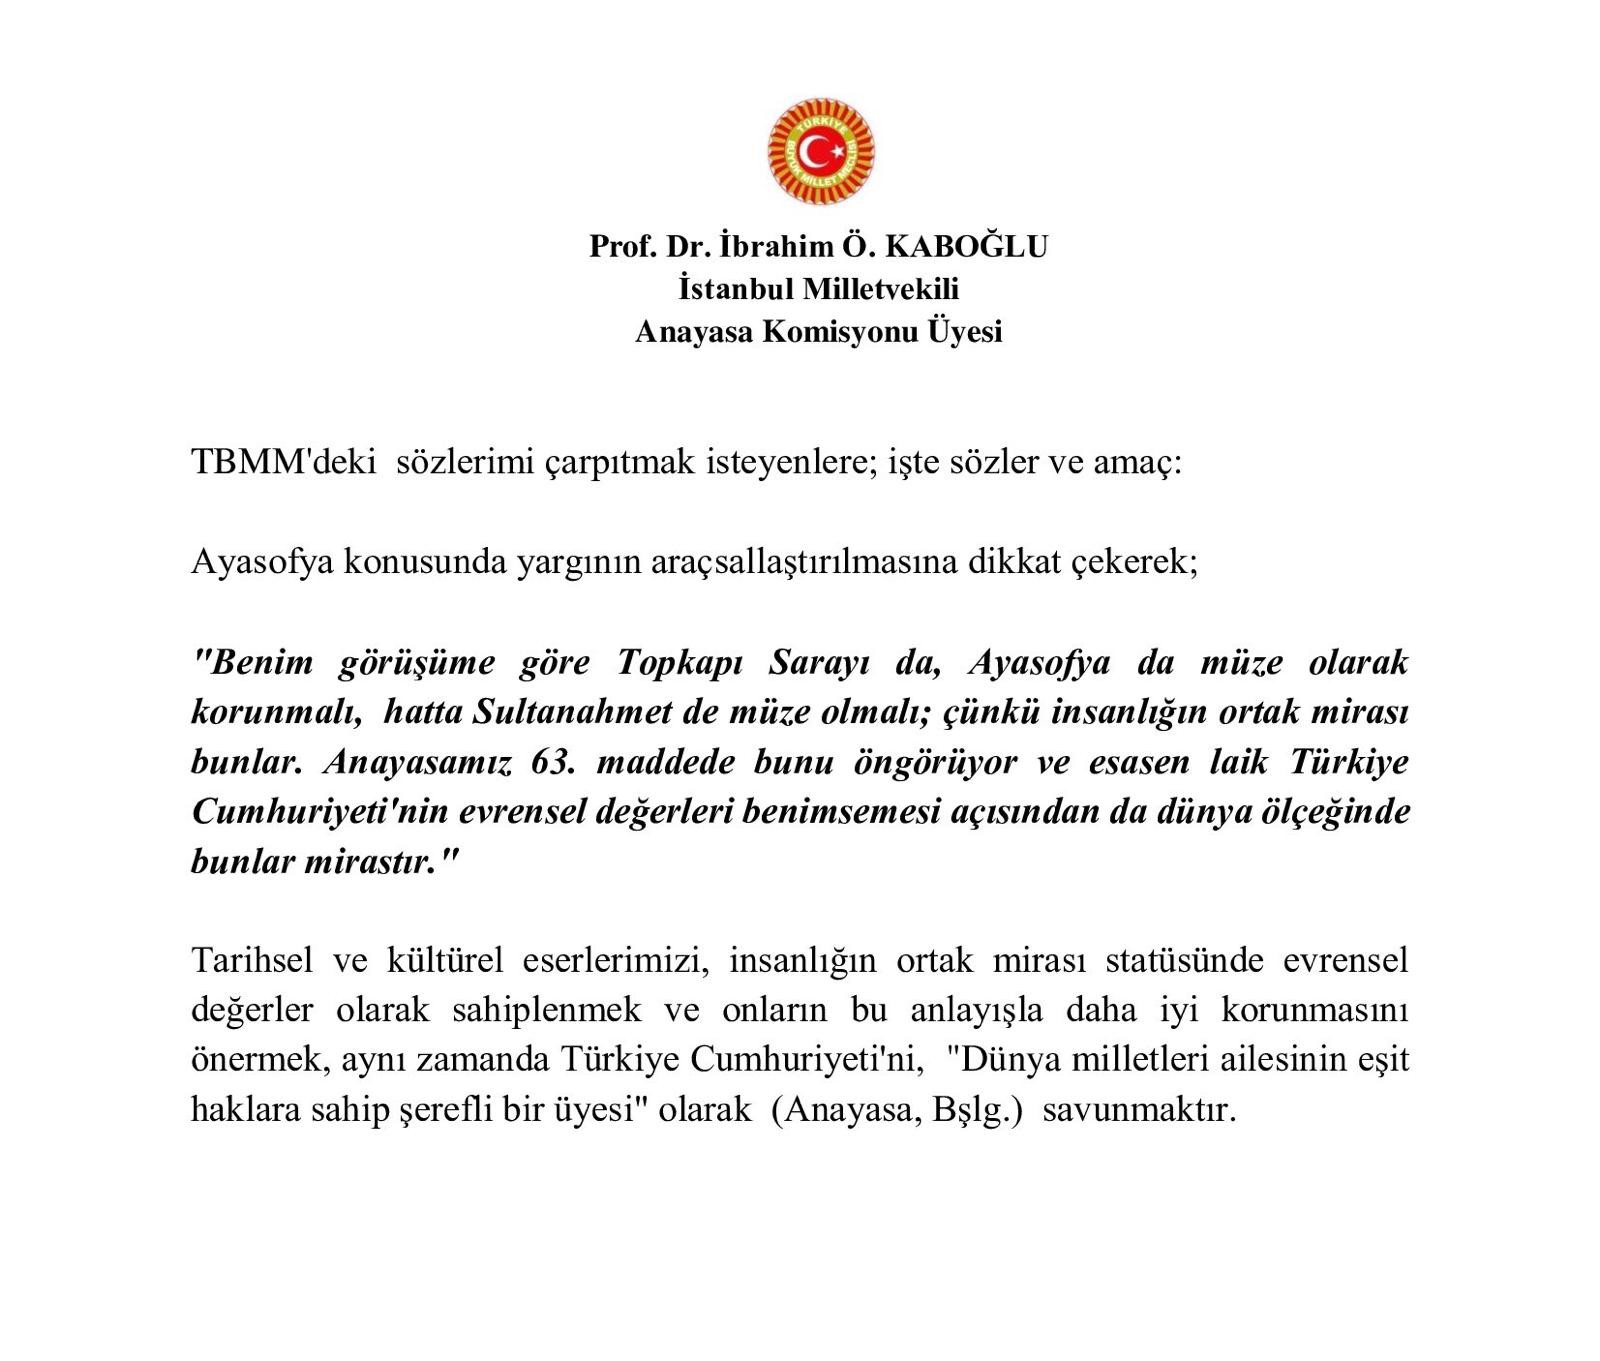 Prof. Dr. Kaboğlu: Tarihsel ve kültürel eserlerimizin korunmasını önermek Türkiye Cumhuriyeti'ni savunmaktır - Resim : 1